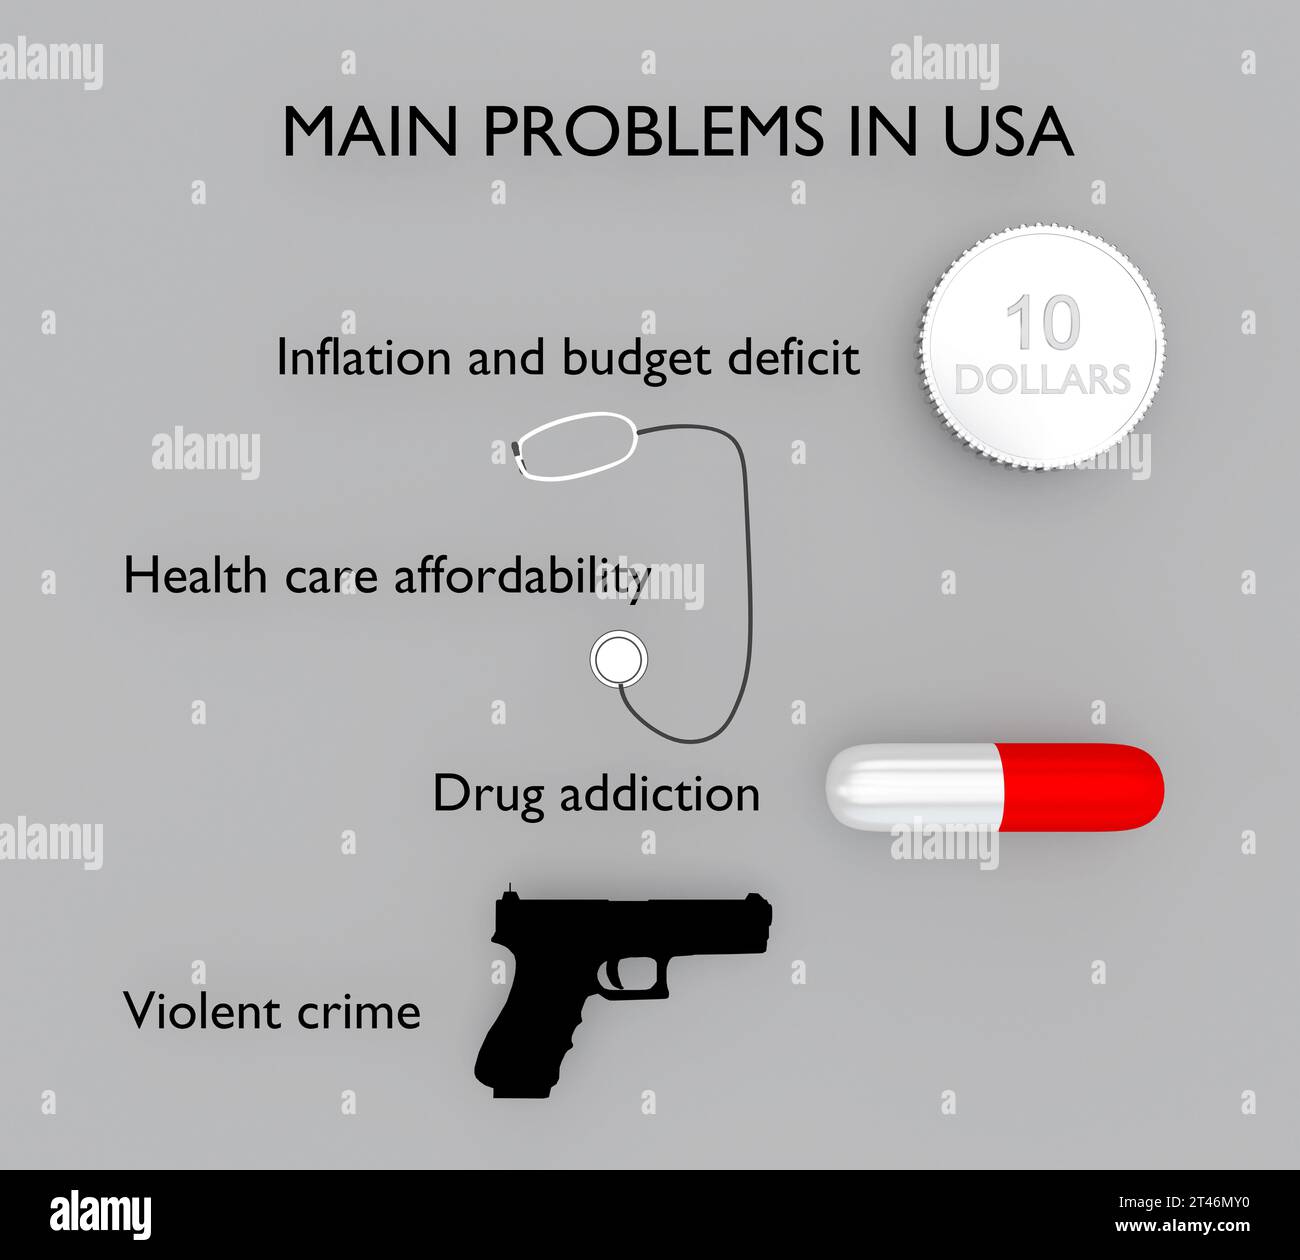 3D-Illustration der Hauptprobleme in den USA: Inflation und Haushaltsdefizit, Erschwinglichkeit im Gesundheitswesen, Drogenabhängigkeit und Gewaltverbrechen. Stockfoto